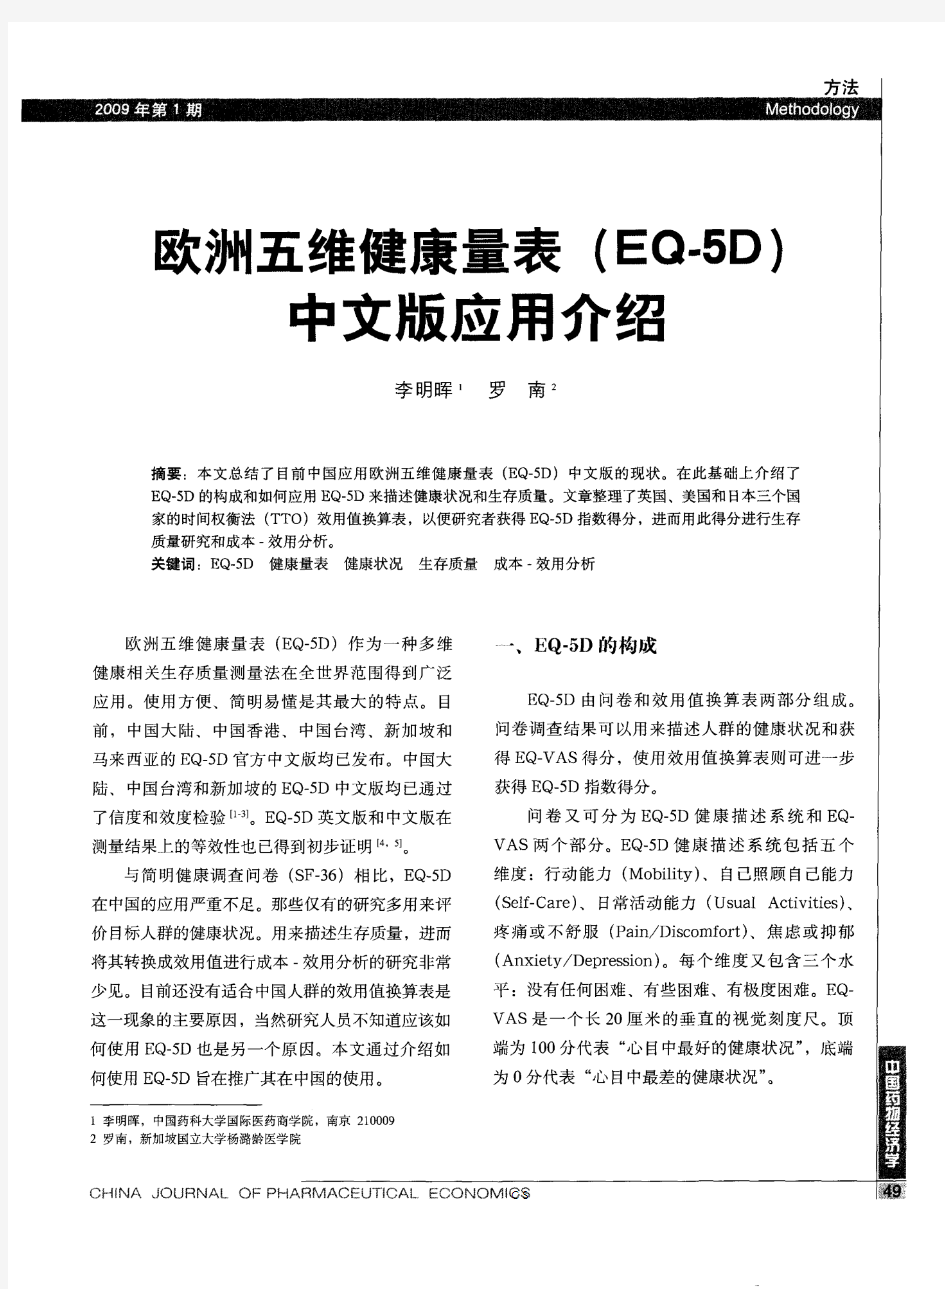 欧洲五维健康量表(EQ-5D)中文版应用介绍